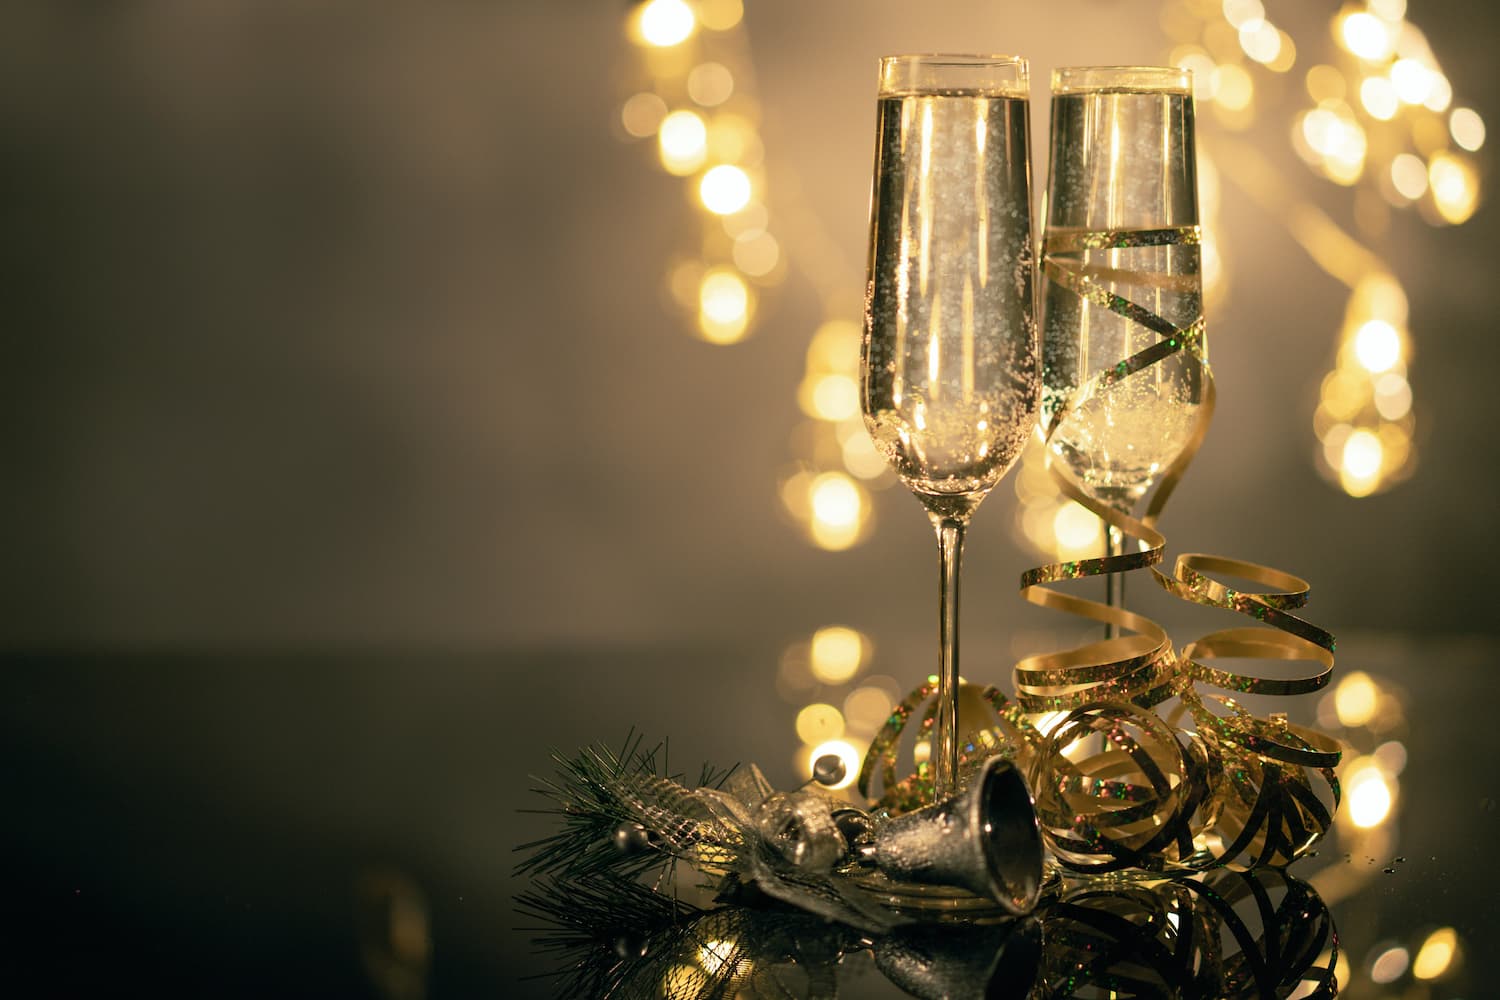 Taças de Champagne com decoração natalina. Imagem disponível em pexels.